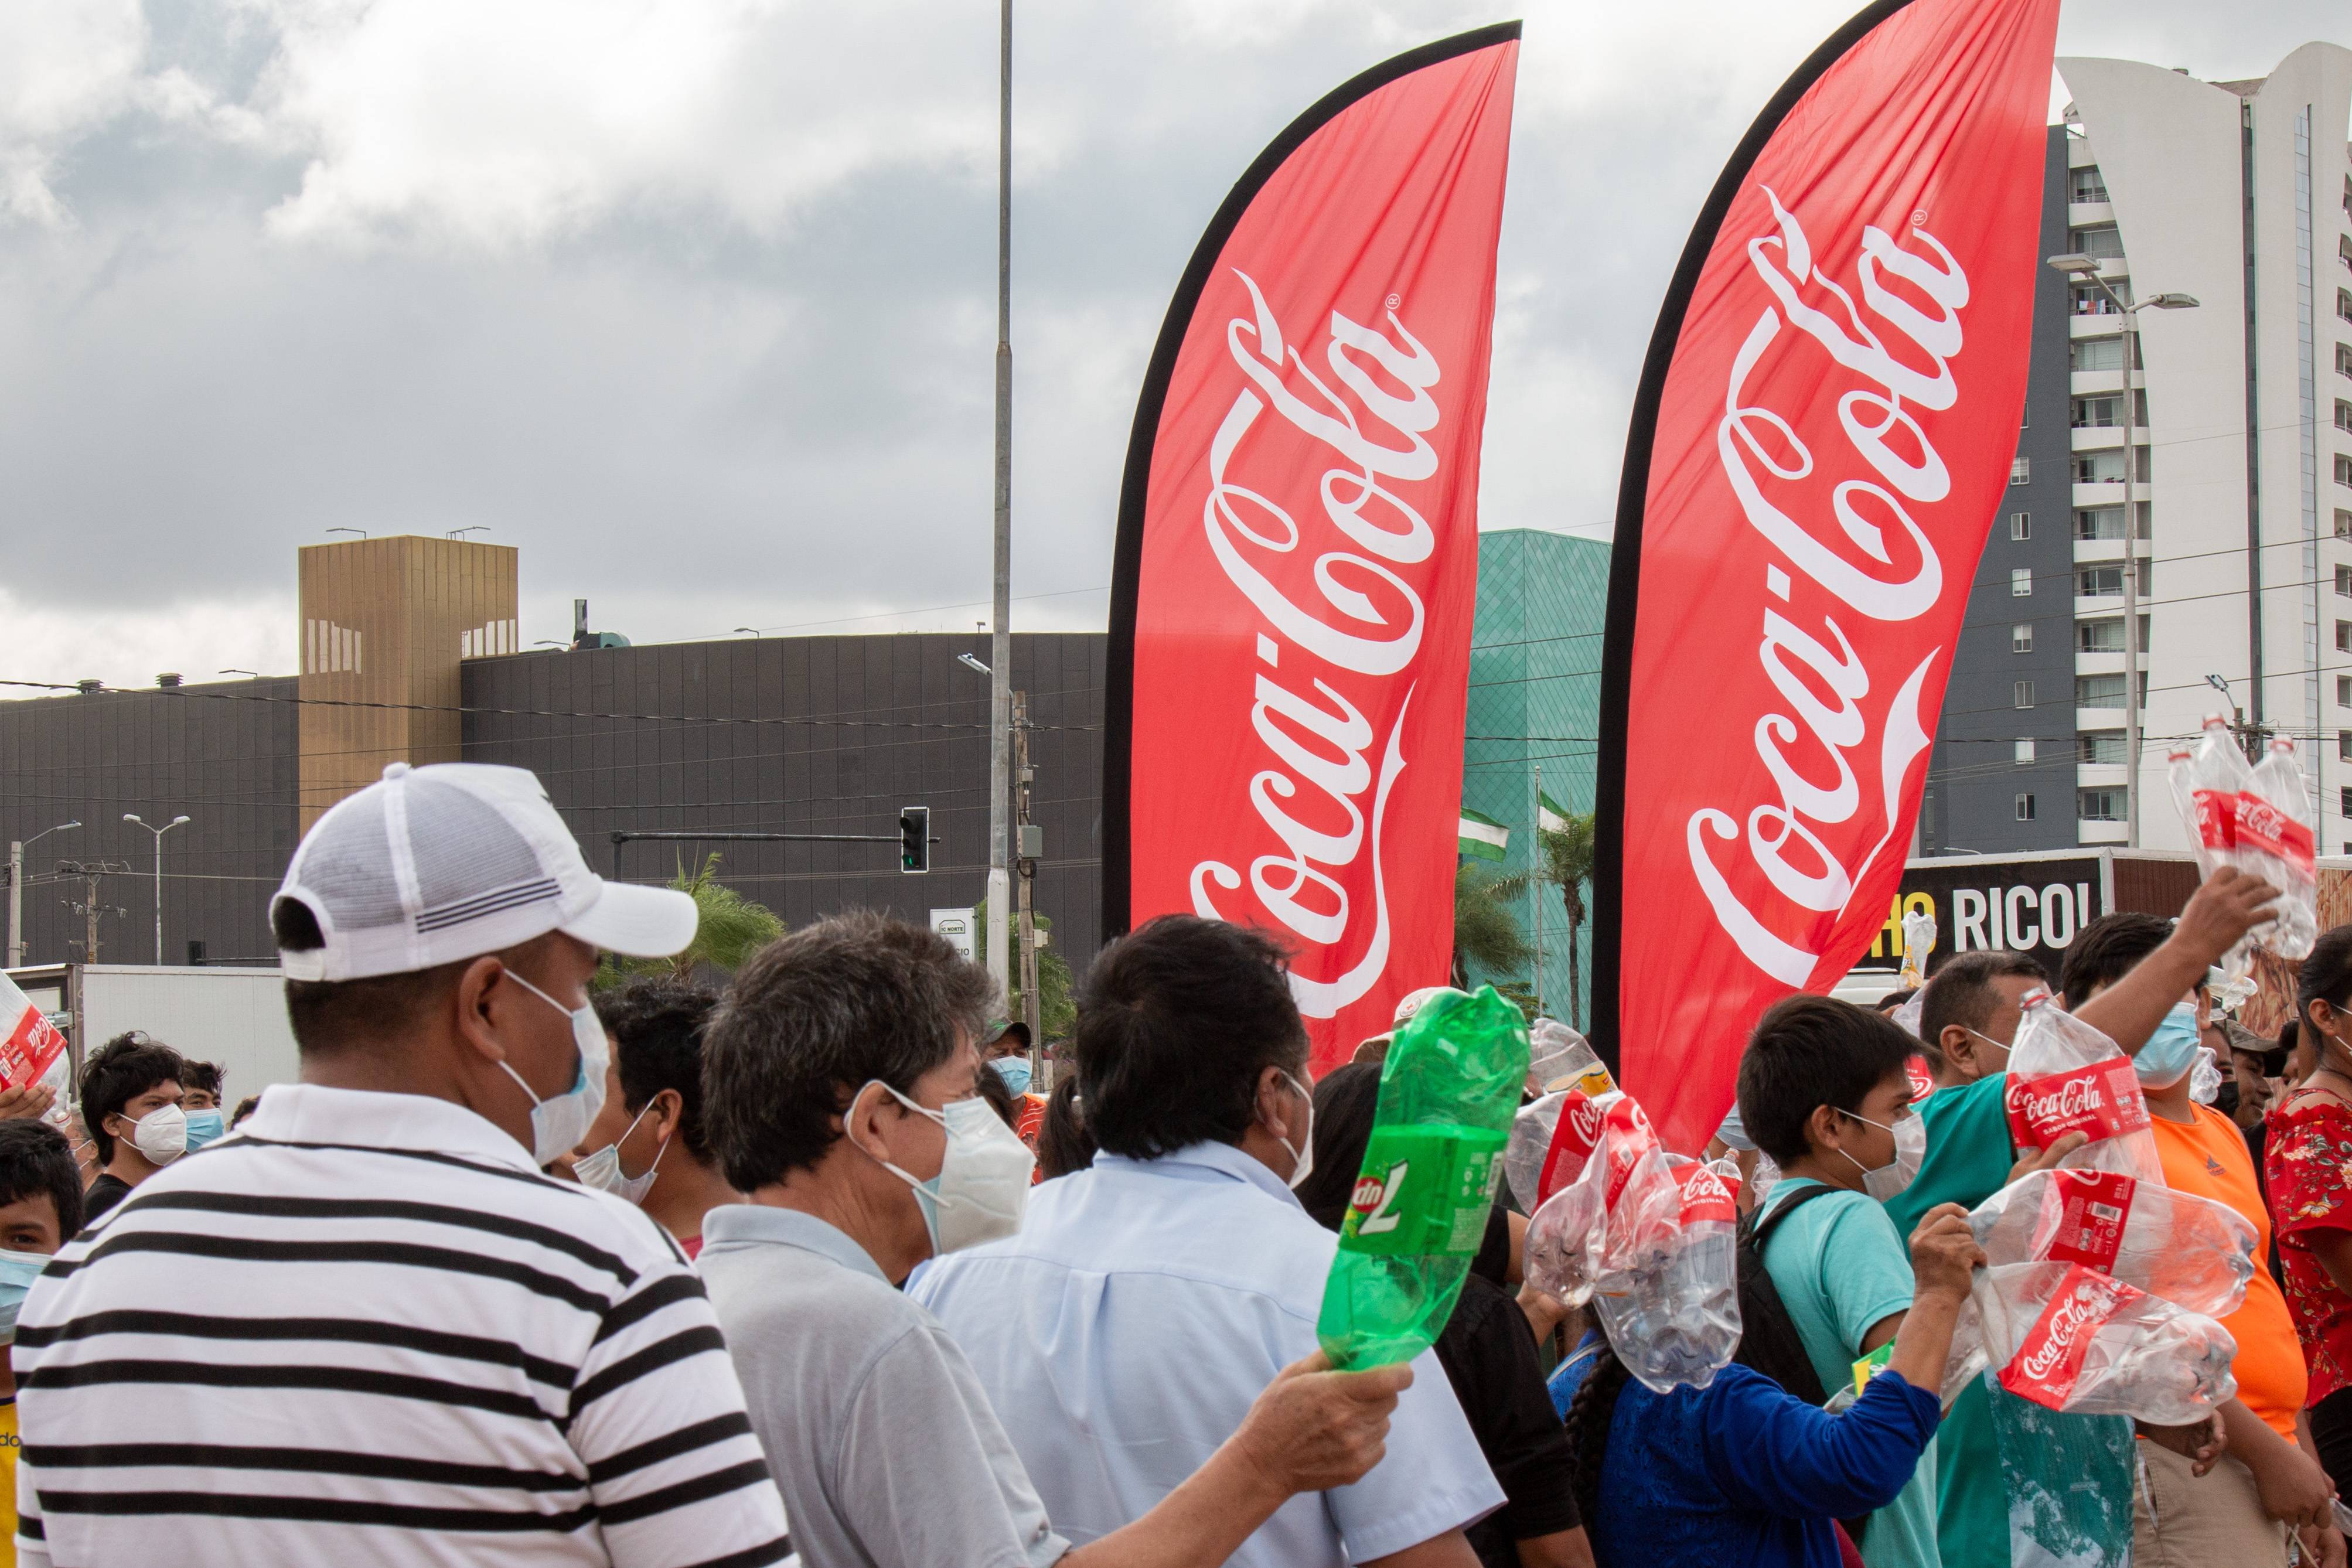 2 banderas de Coca-Cola y personas con botellas plásticas en la mano